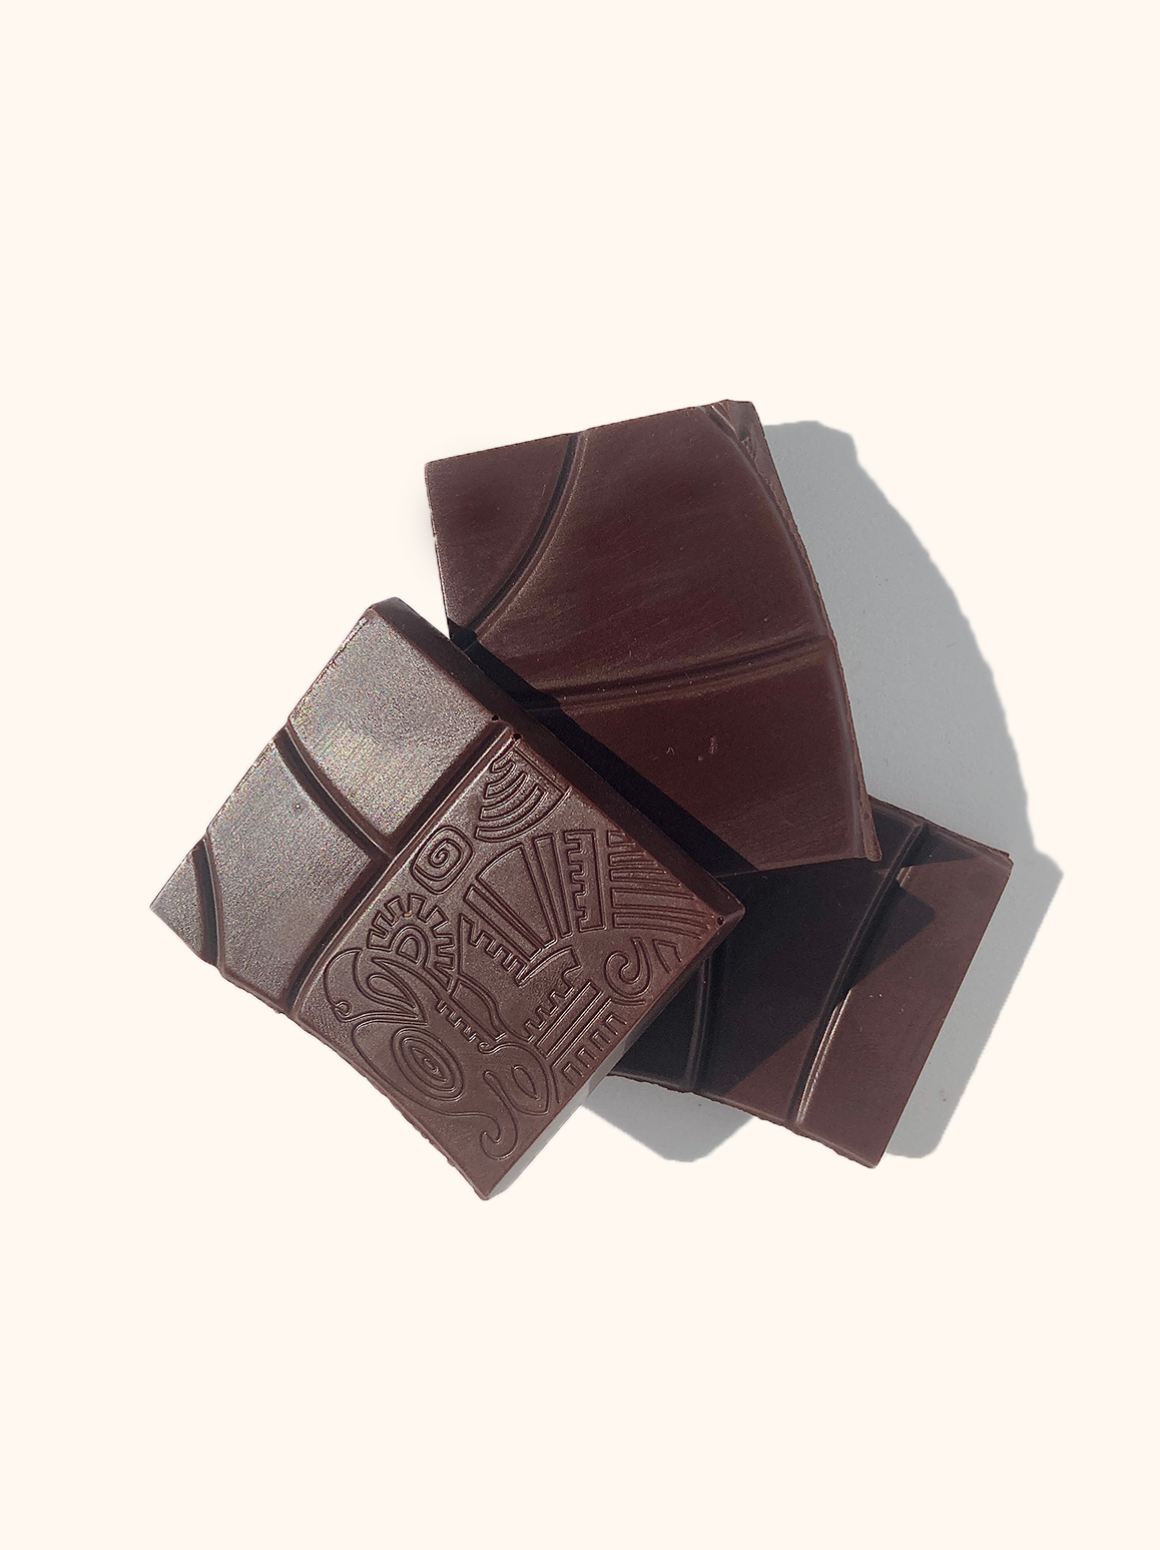 Dark Chocolate, Fleur de Sel & CBD Bar